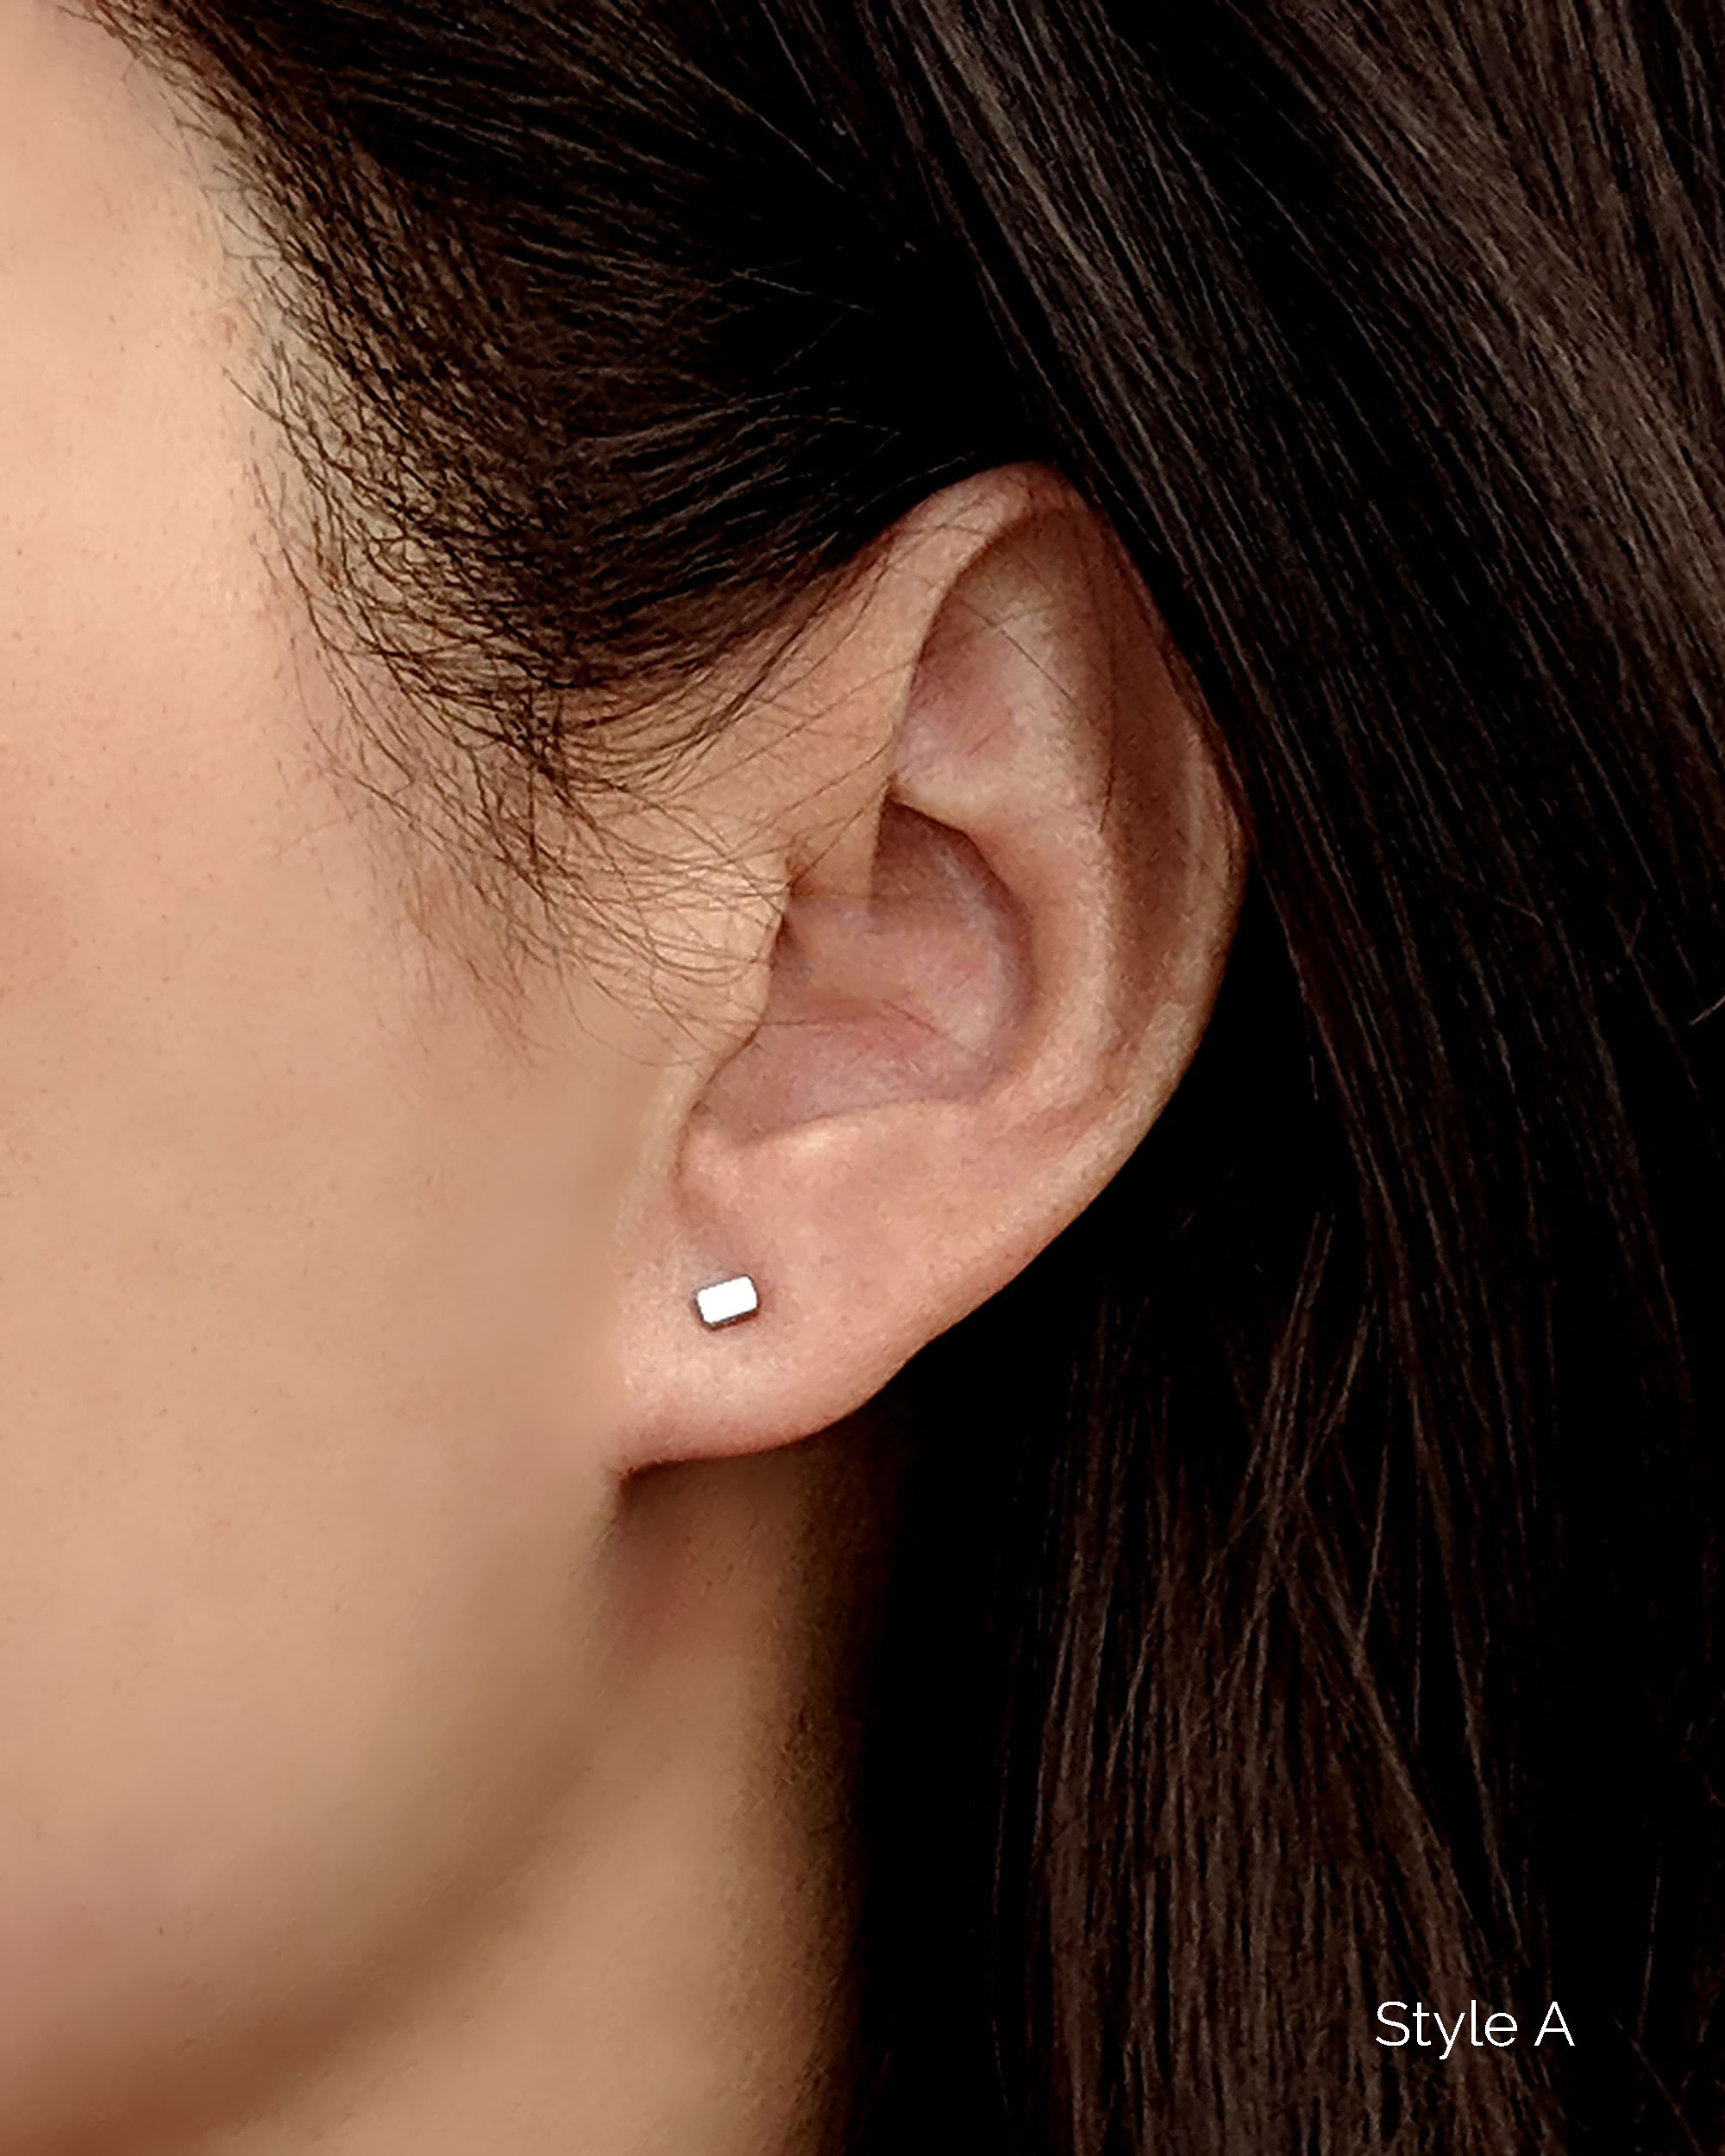 Debating getting a second lobe piercing… is it weird on just one ear? |  Second lobe piercing, Earings piercings, Ear jewelry